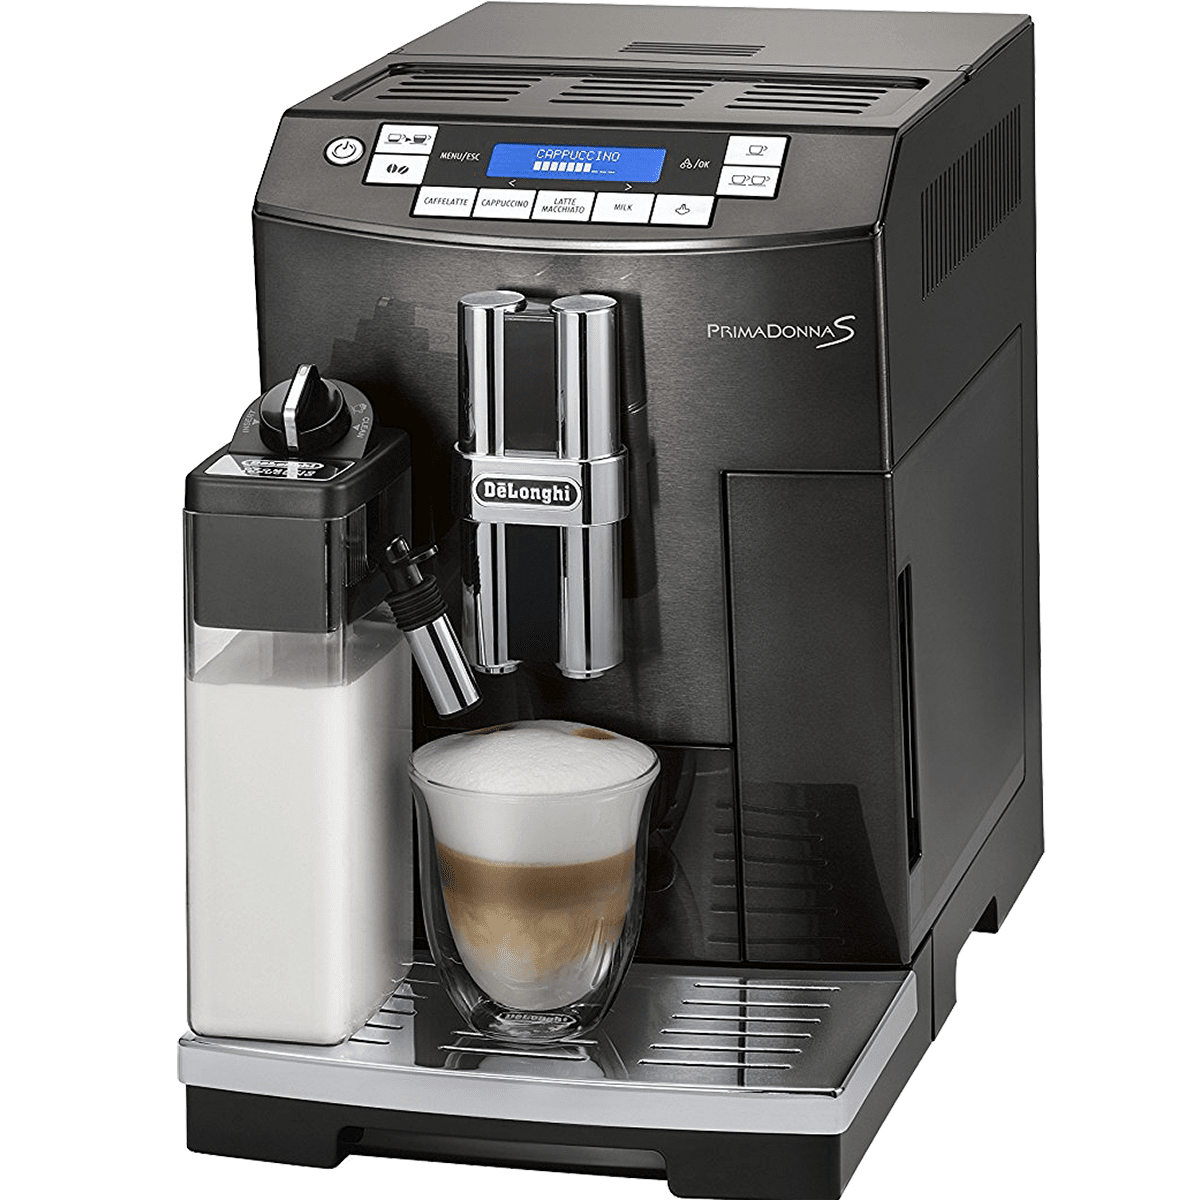 Delonghi Ecam28465 Primadonna S Automatic Espresso Machine